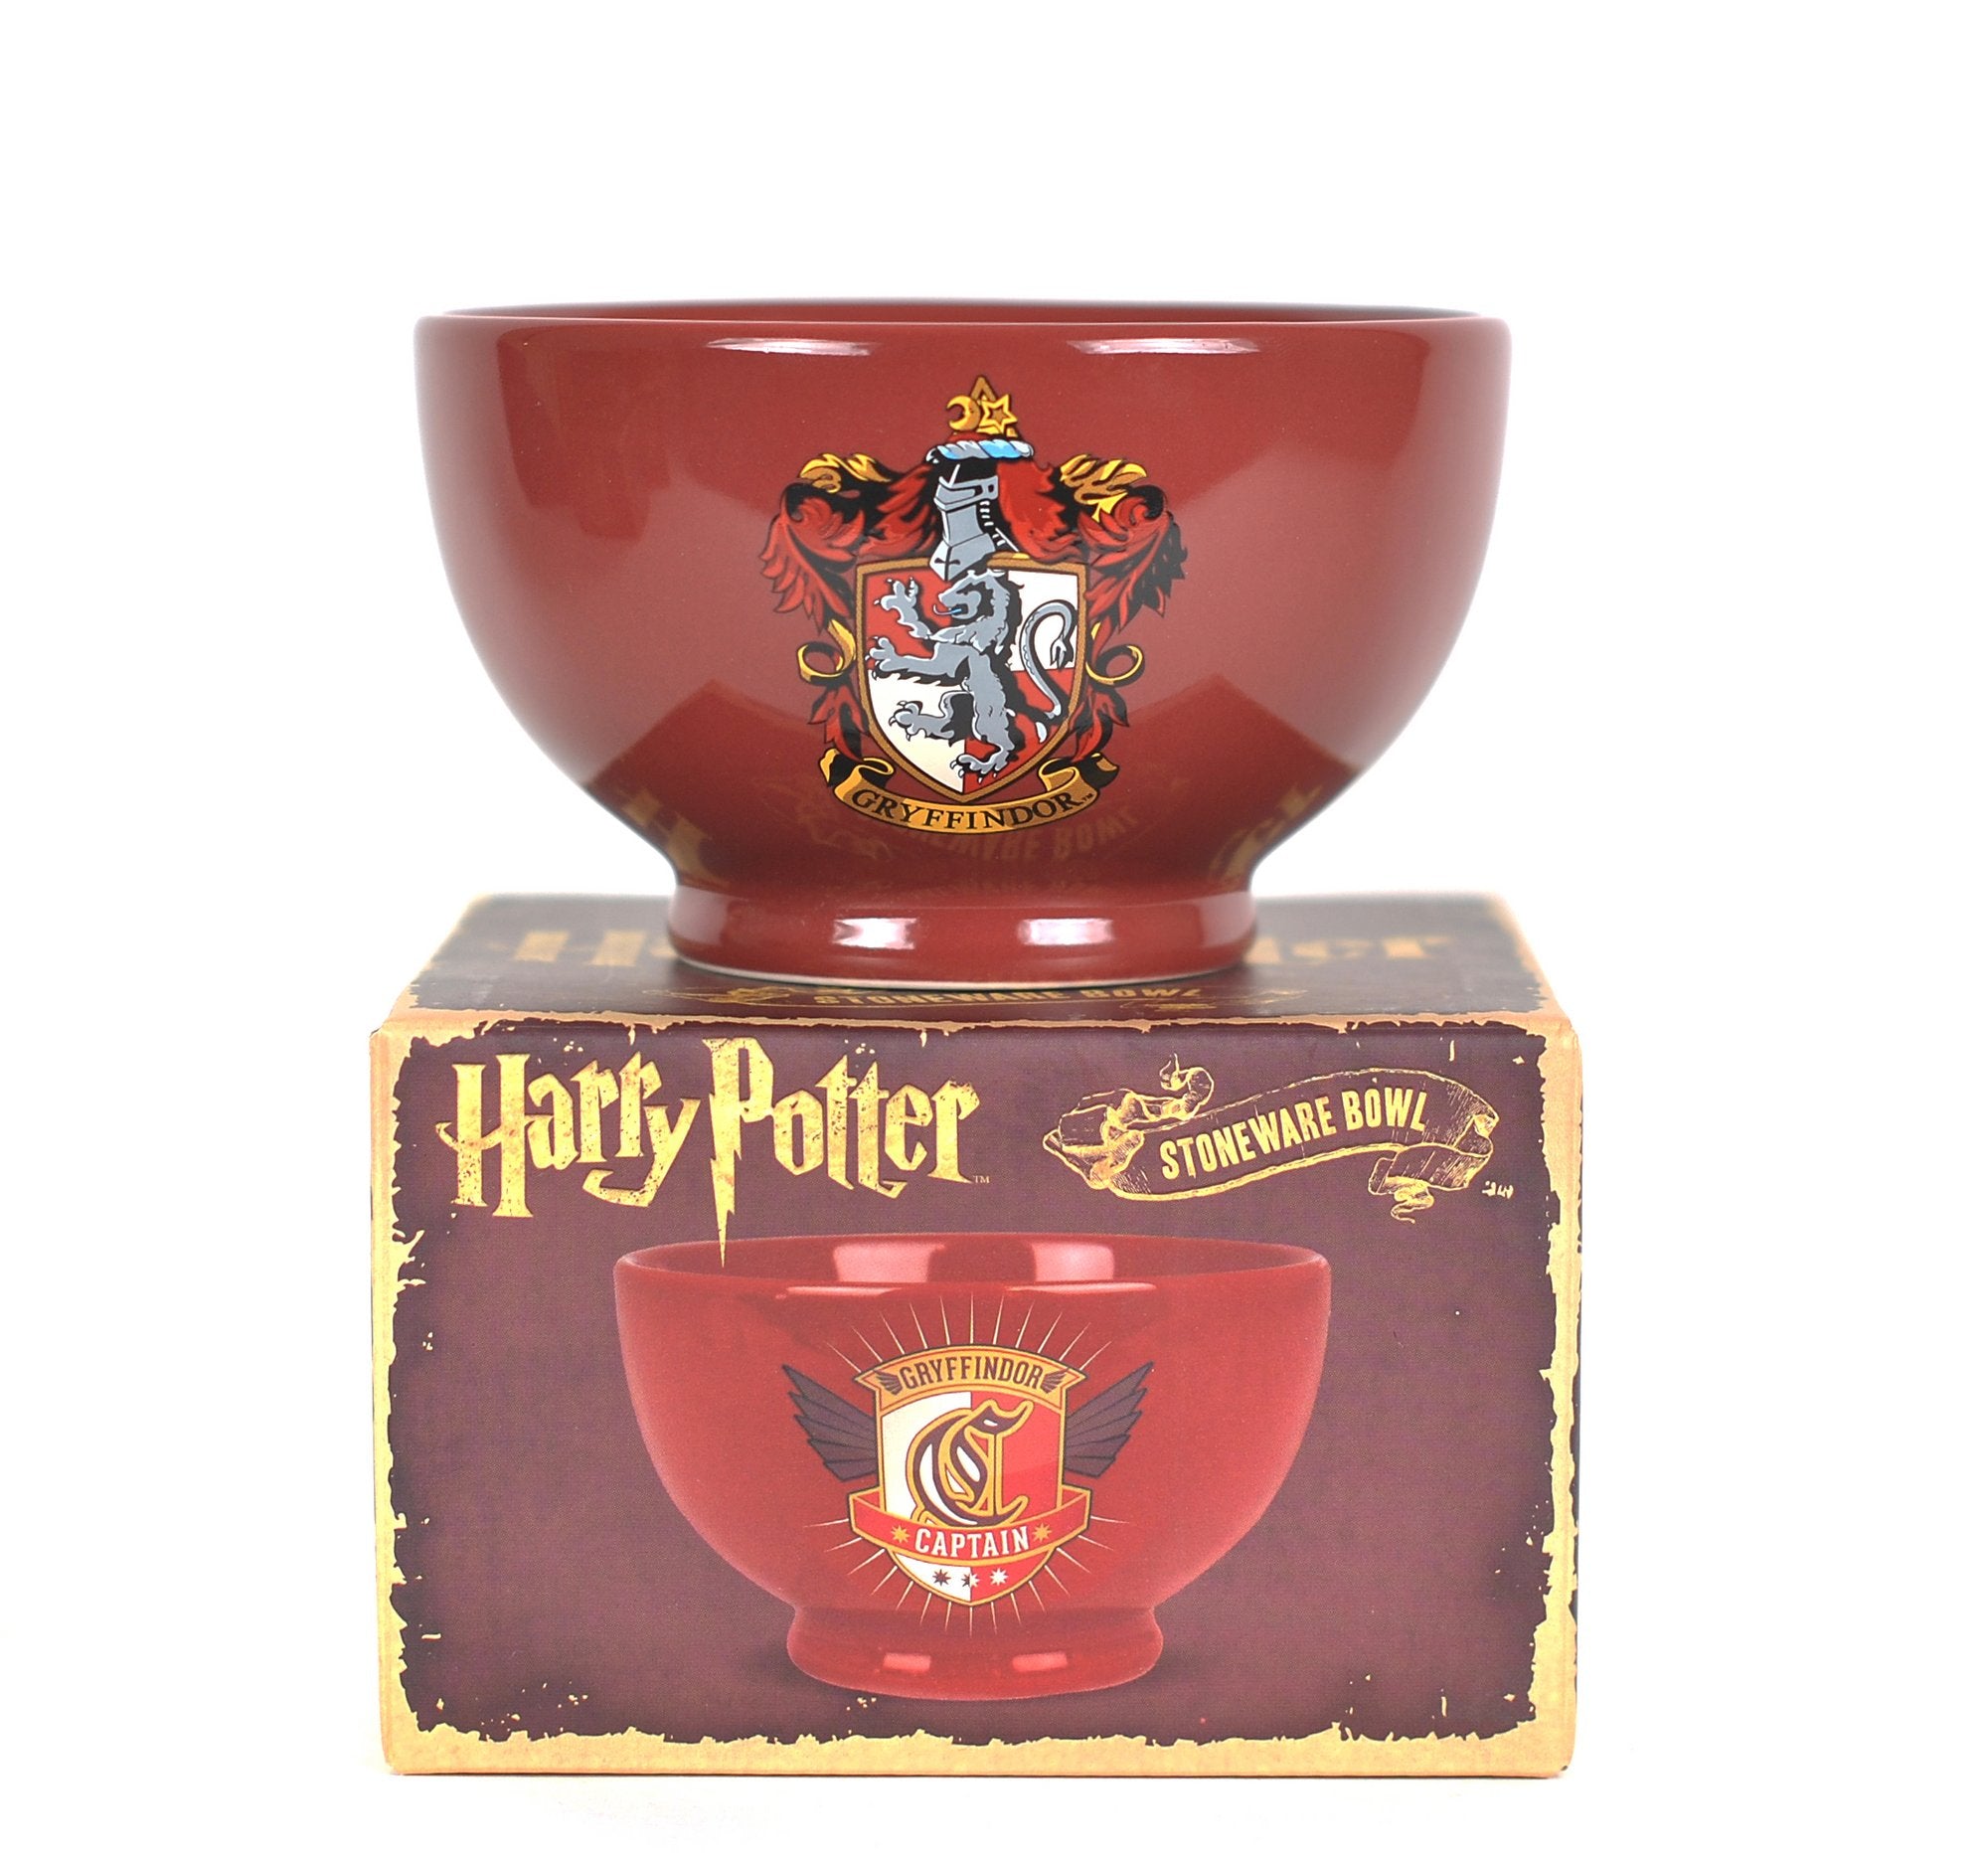 Harry Potter Bowl - Gryffindor Crest